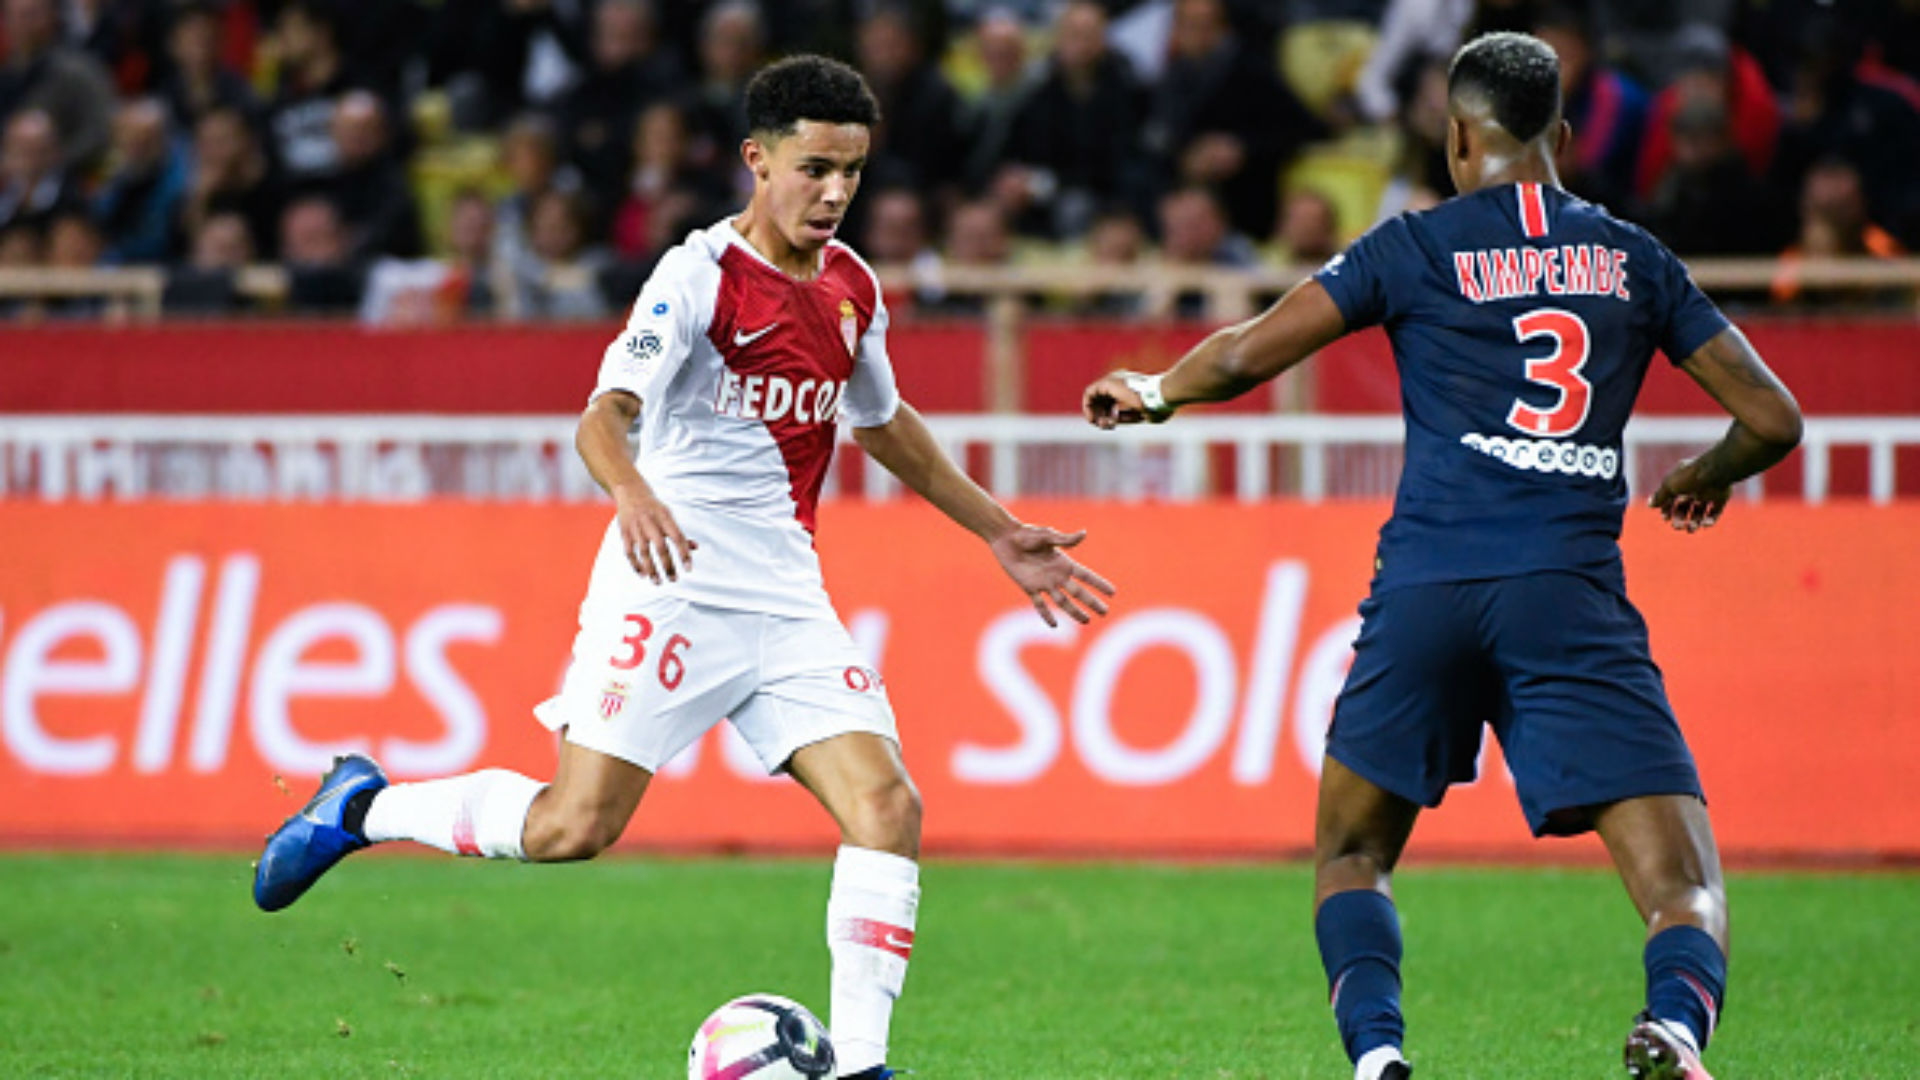 Mercato - Sofiane Diop (Monaco) rejoint officiellement Sochaux en prêt